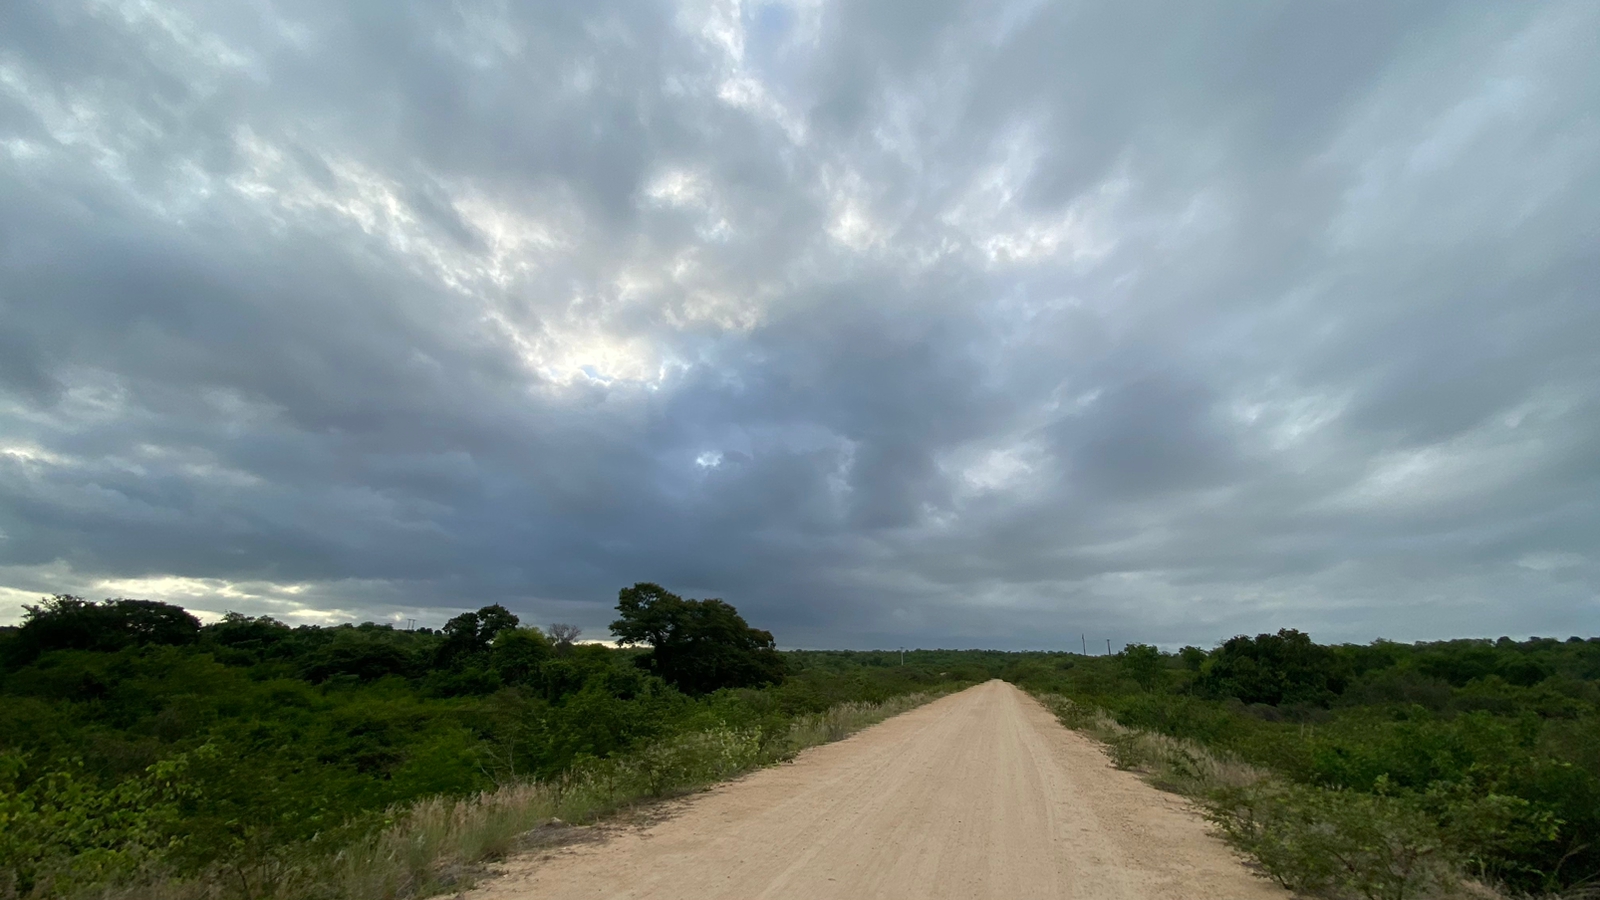 ul do Ceará está sob aviso meteorológico (FOTO: Marciel Bezerra)